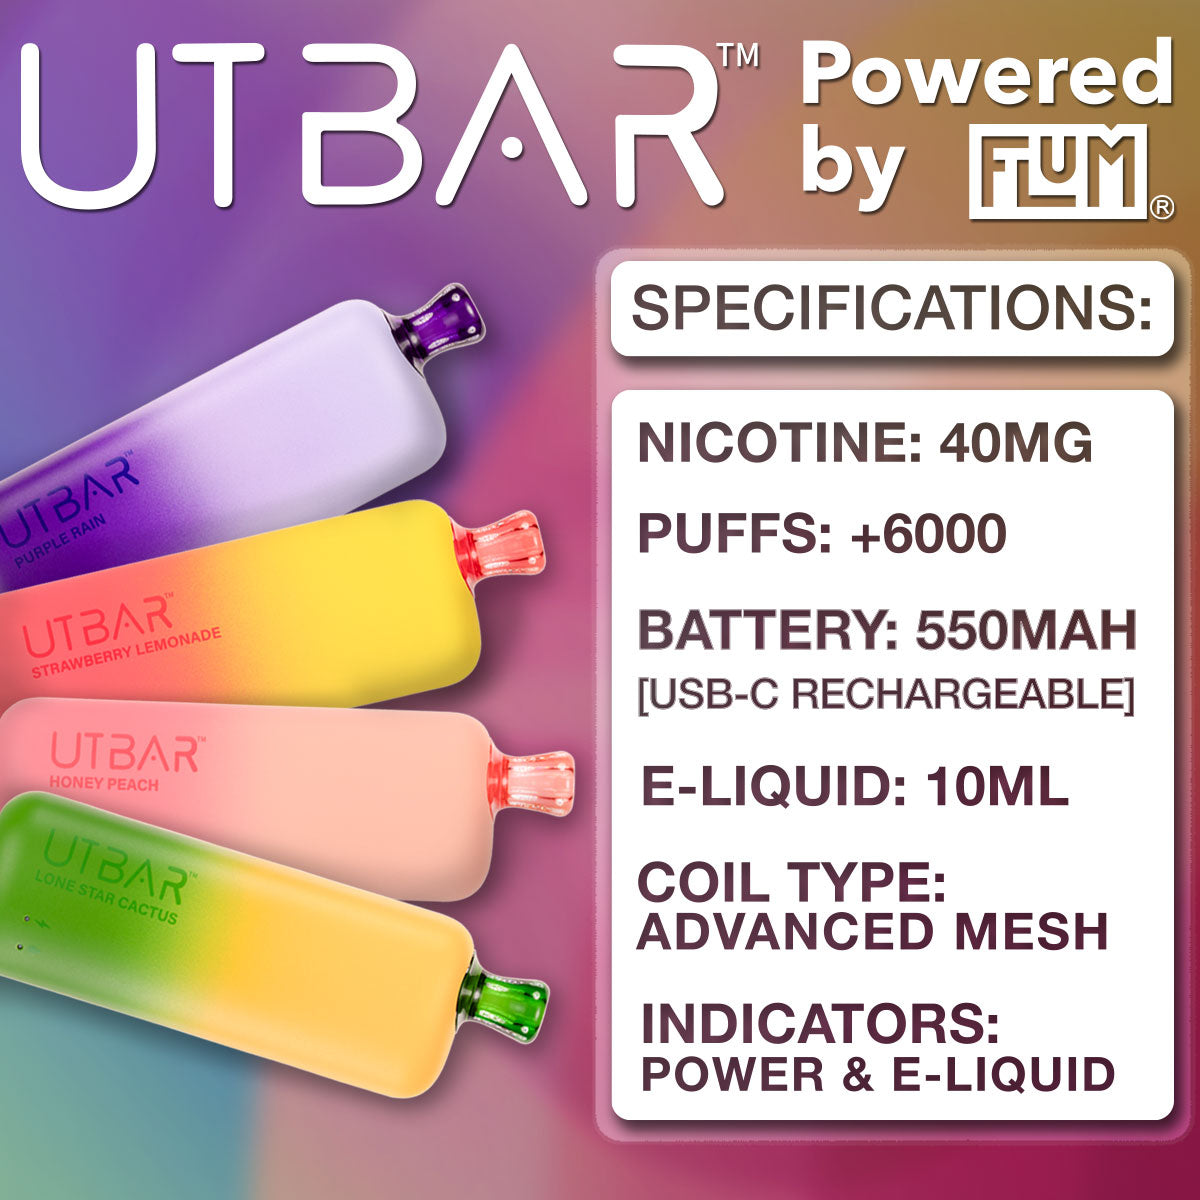 More Great UT Bar Flavors